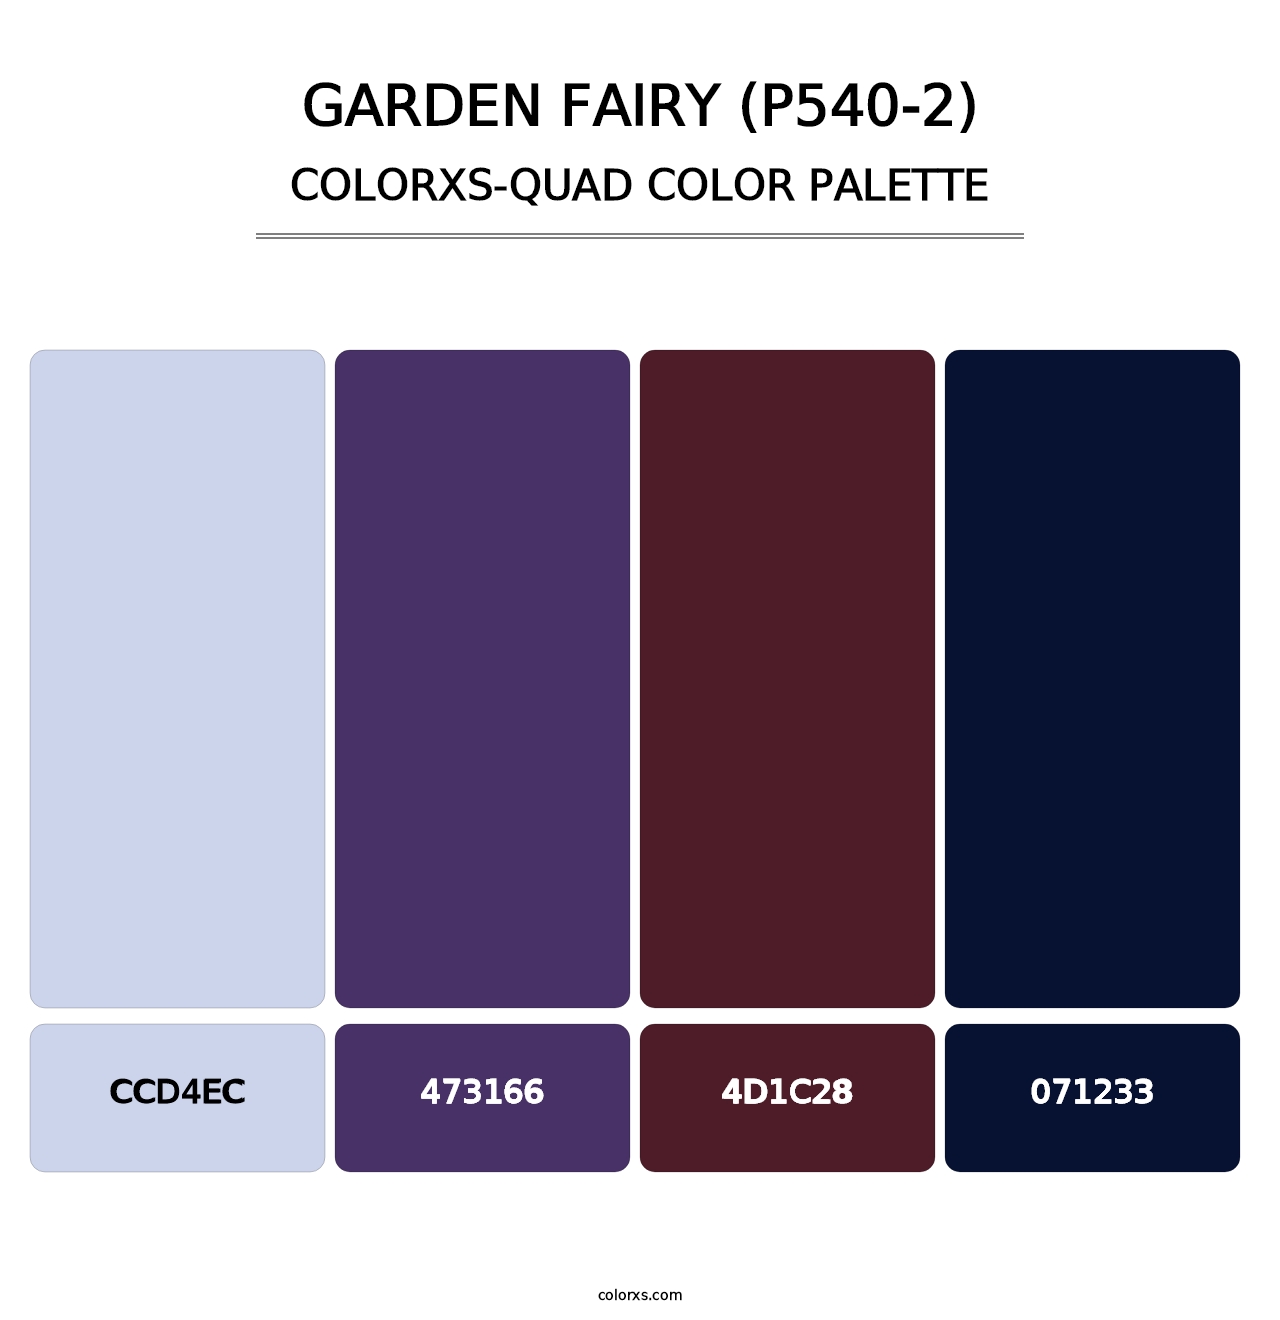 Garden Fairy (P540-2) - Colorxs Quad Palette